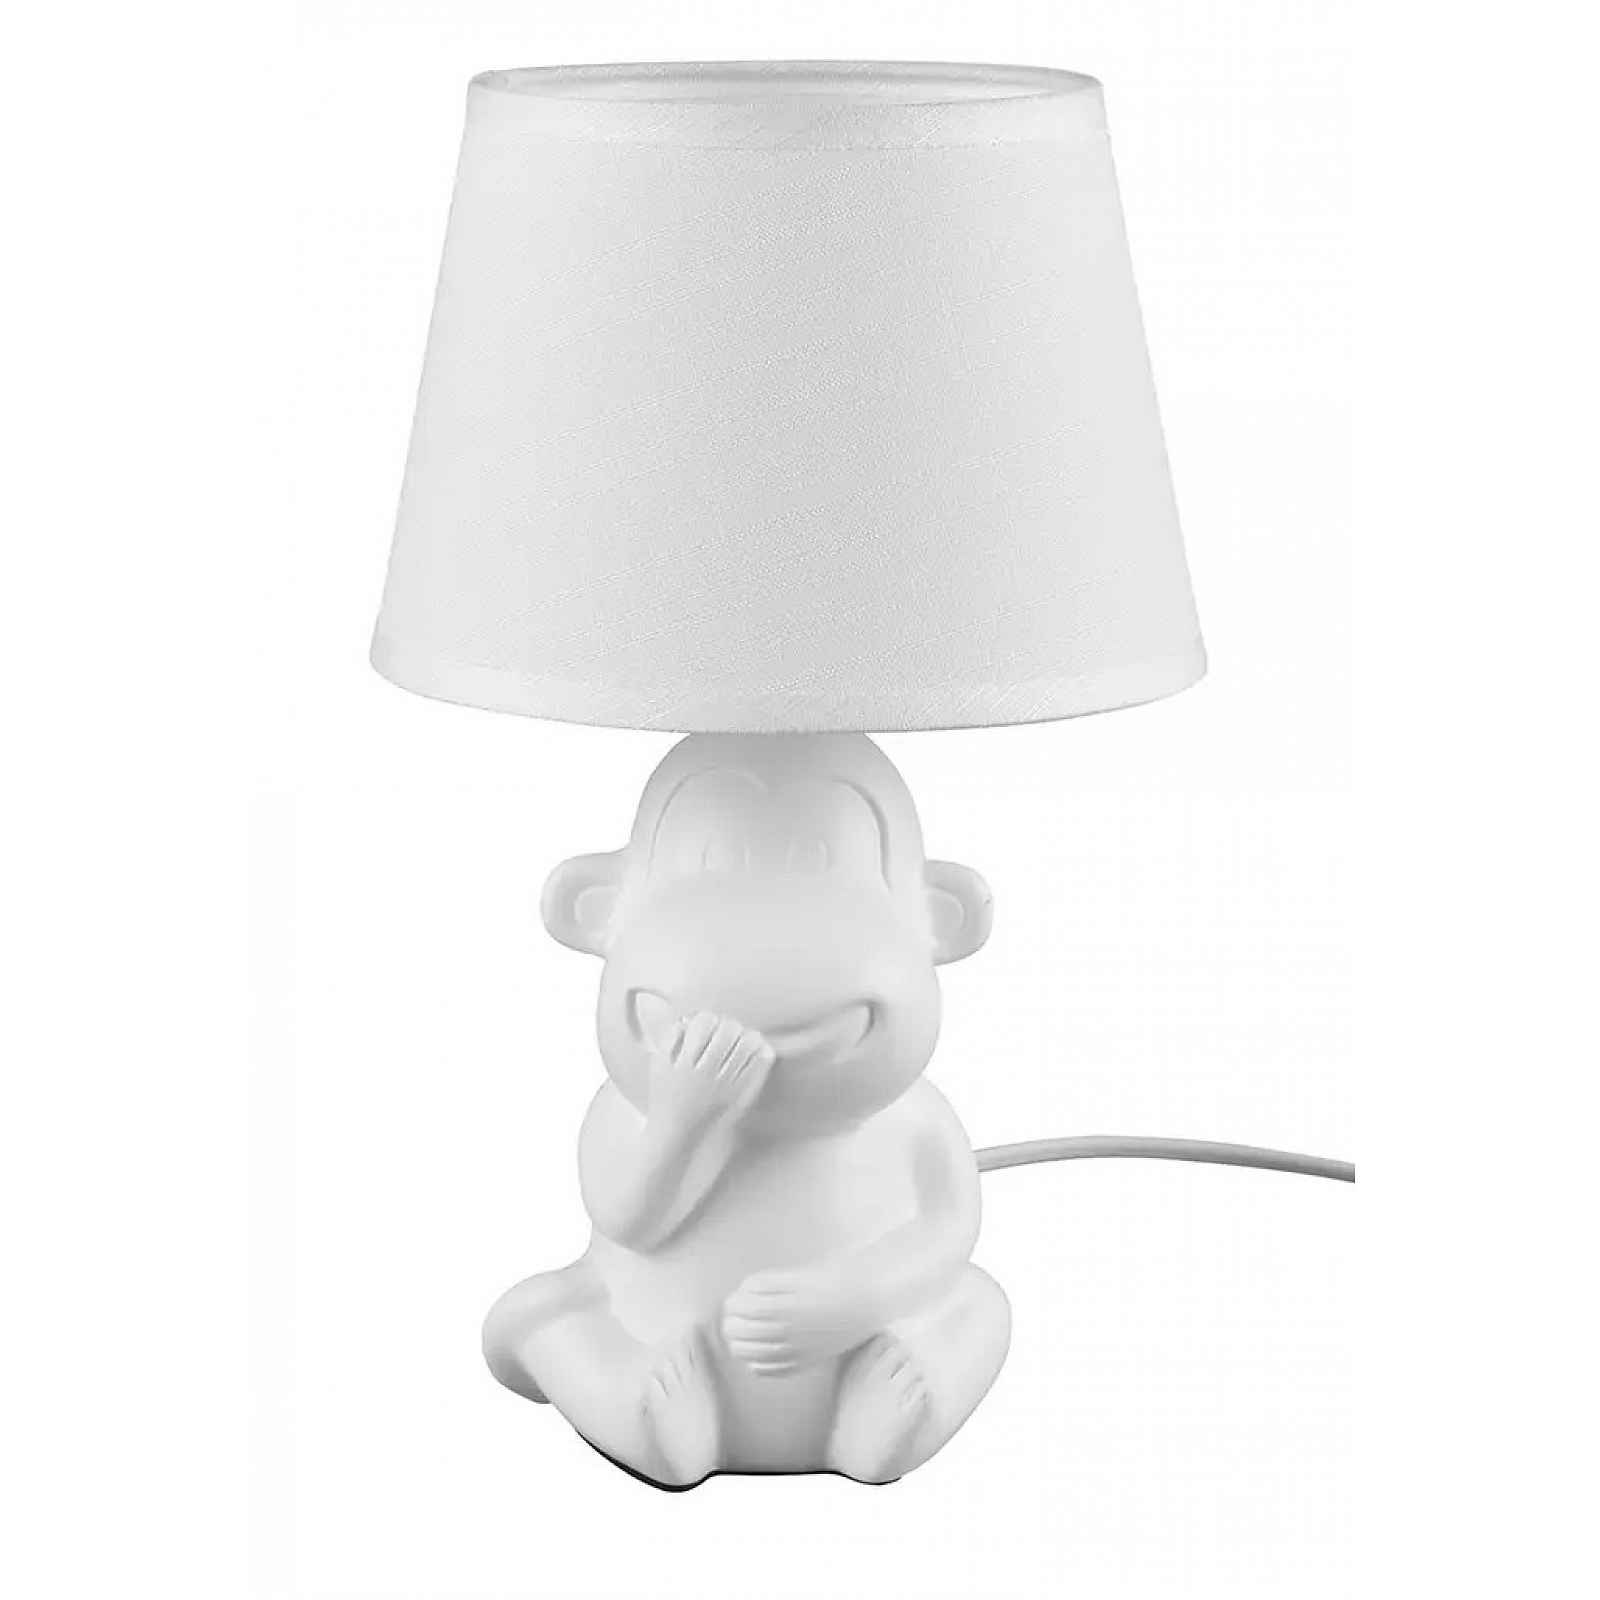 Stolní lampa Chita, motiv opice, bílá